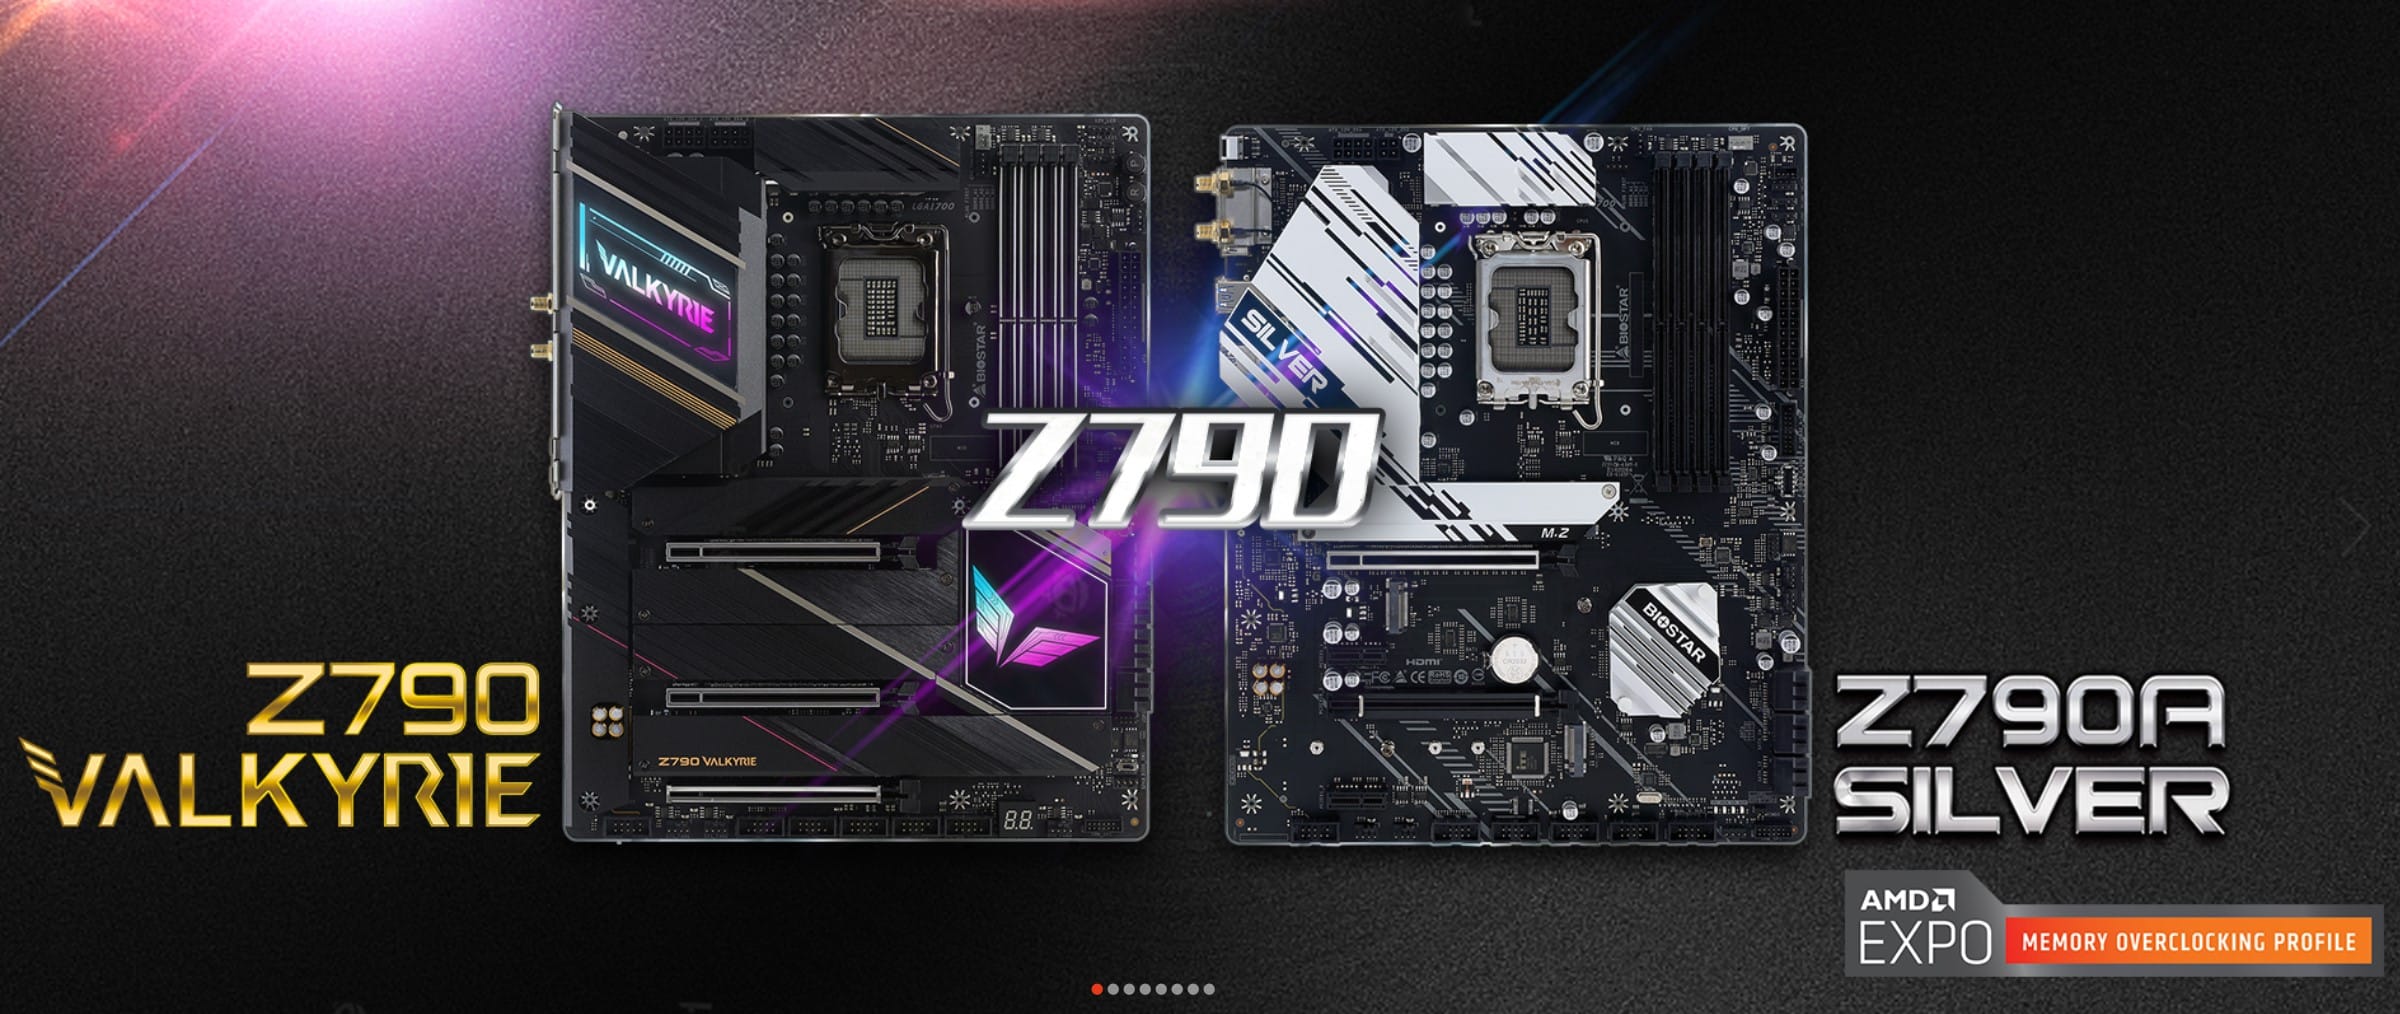 BIOSTAR presenta los motherboards Z790 VALKYRIE y Z790A-SILVER diseñados para ejecutar los CPU Intel Z790 Chipset de 13th Gen, GamersRD